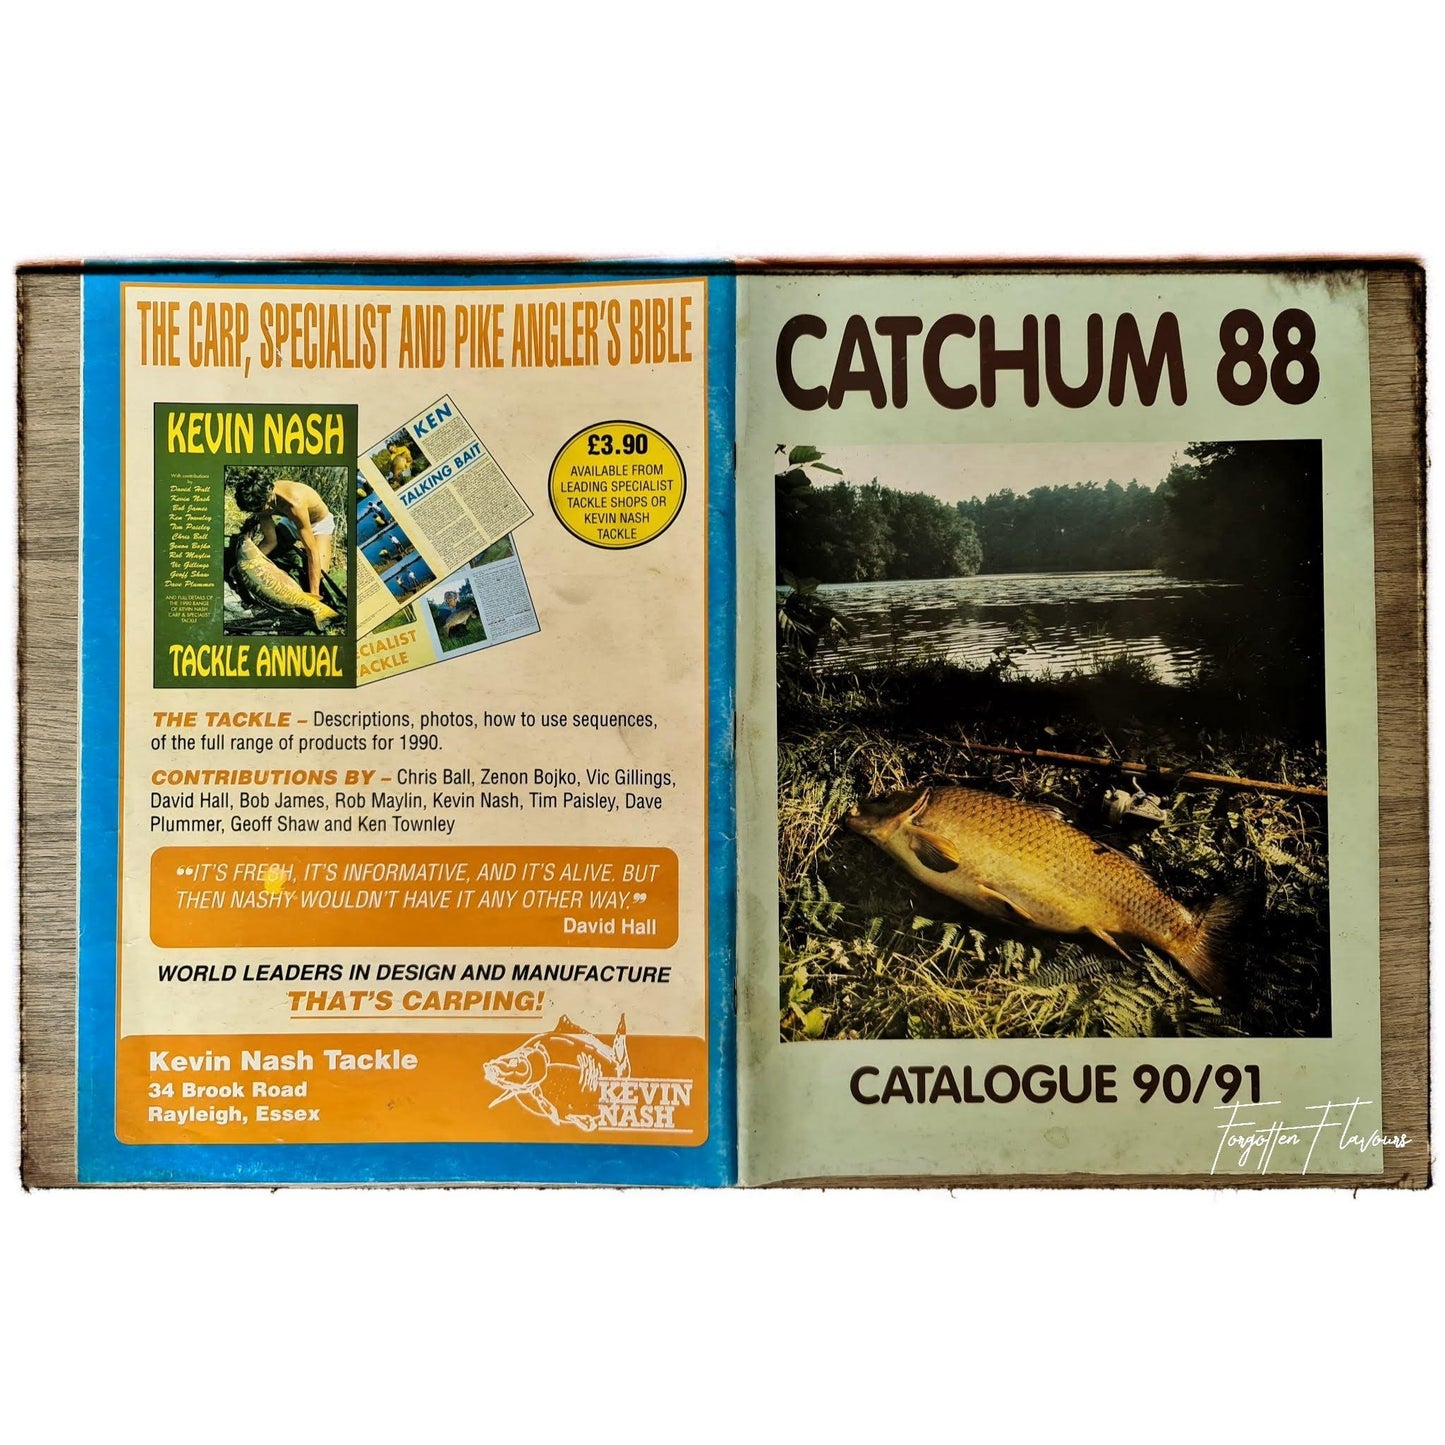 Catchum 88 catalogue 90/91